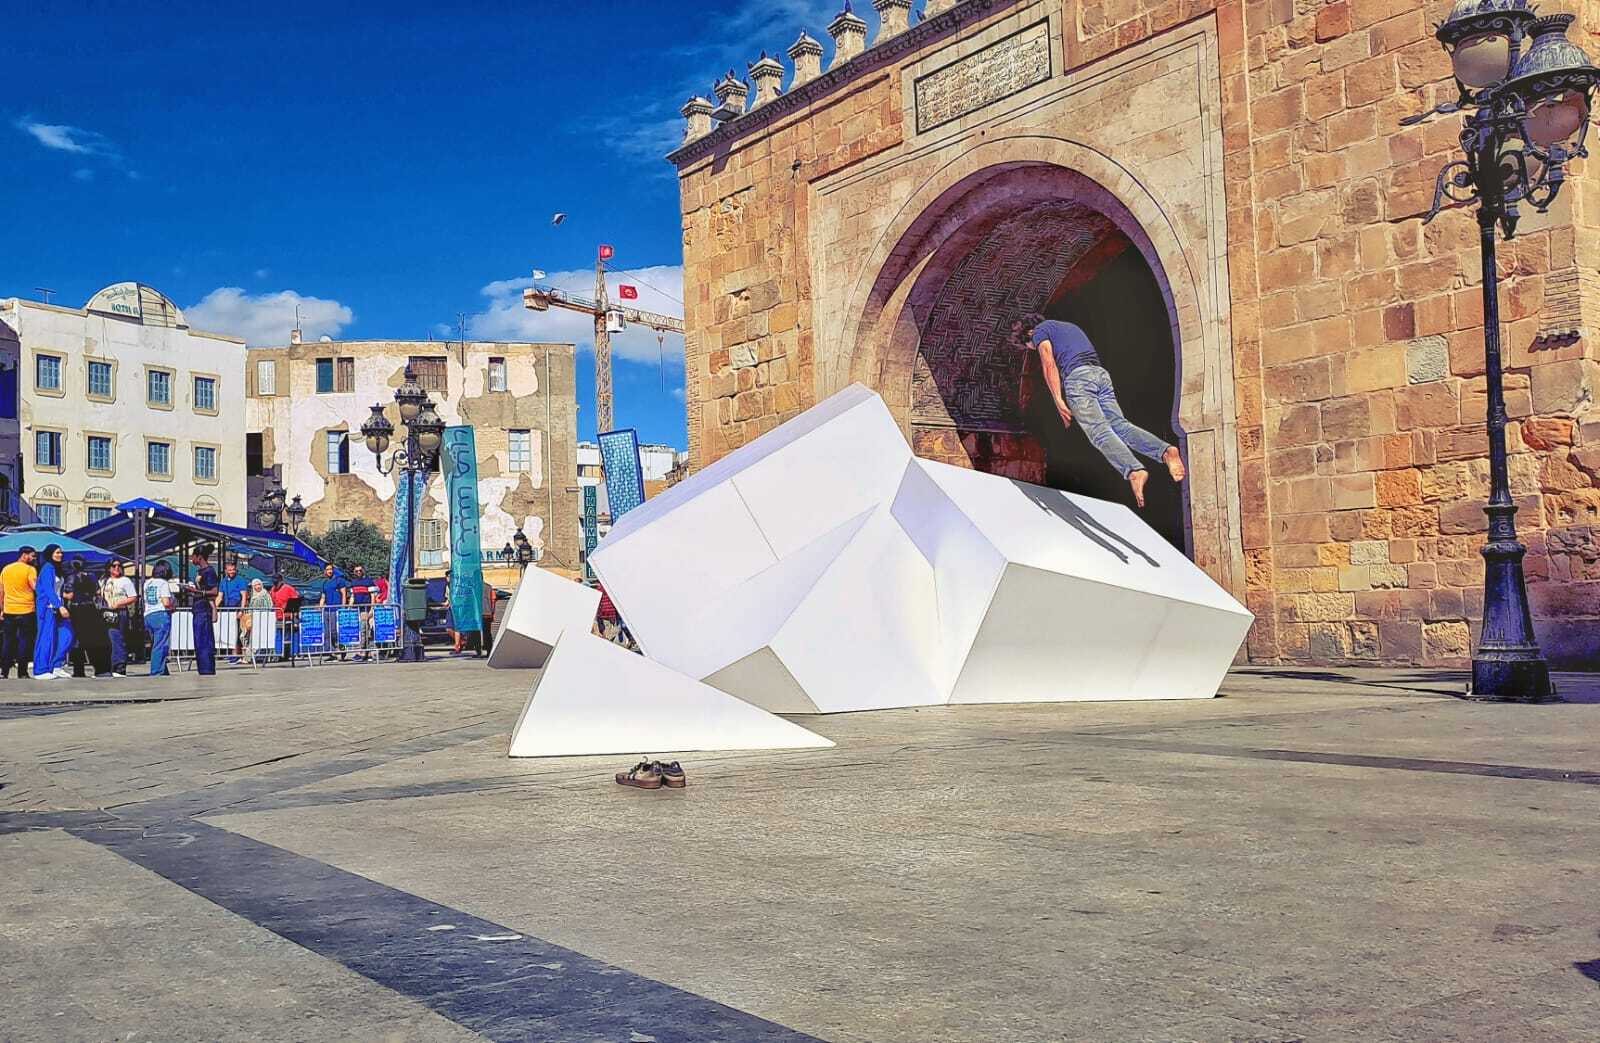 Tanz, Theater und Kunst - überall in der Altstadt finden Veranstaltungen statt. Die Choreographie von Jean-Baptiste André bezieht mehrere plastische Skultpturen mit ein und nutzt als Kulisse ein altes Tor der Medina. Foto: Haroun Ben Youssef.